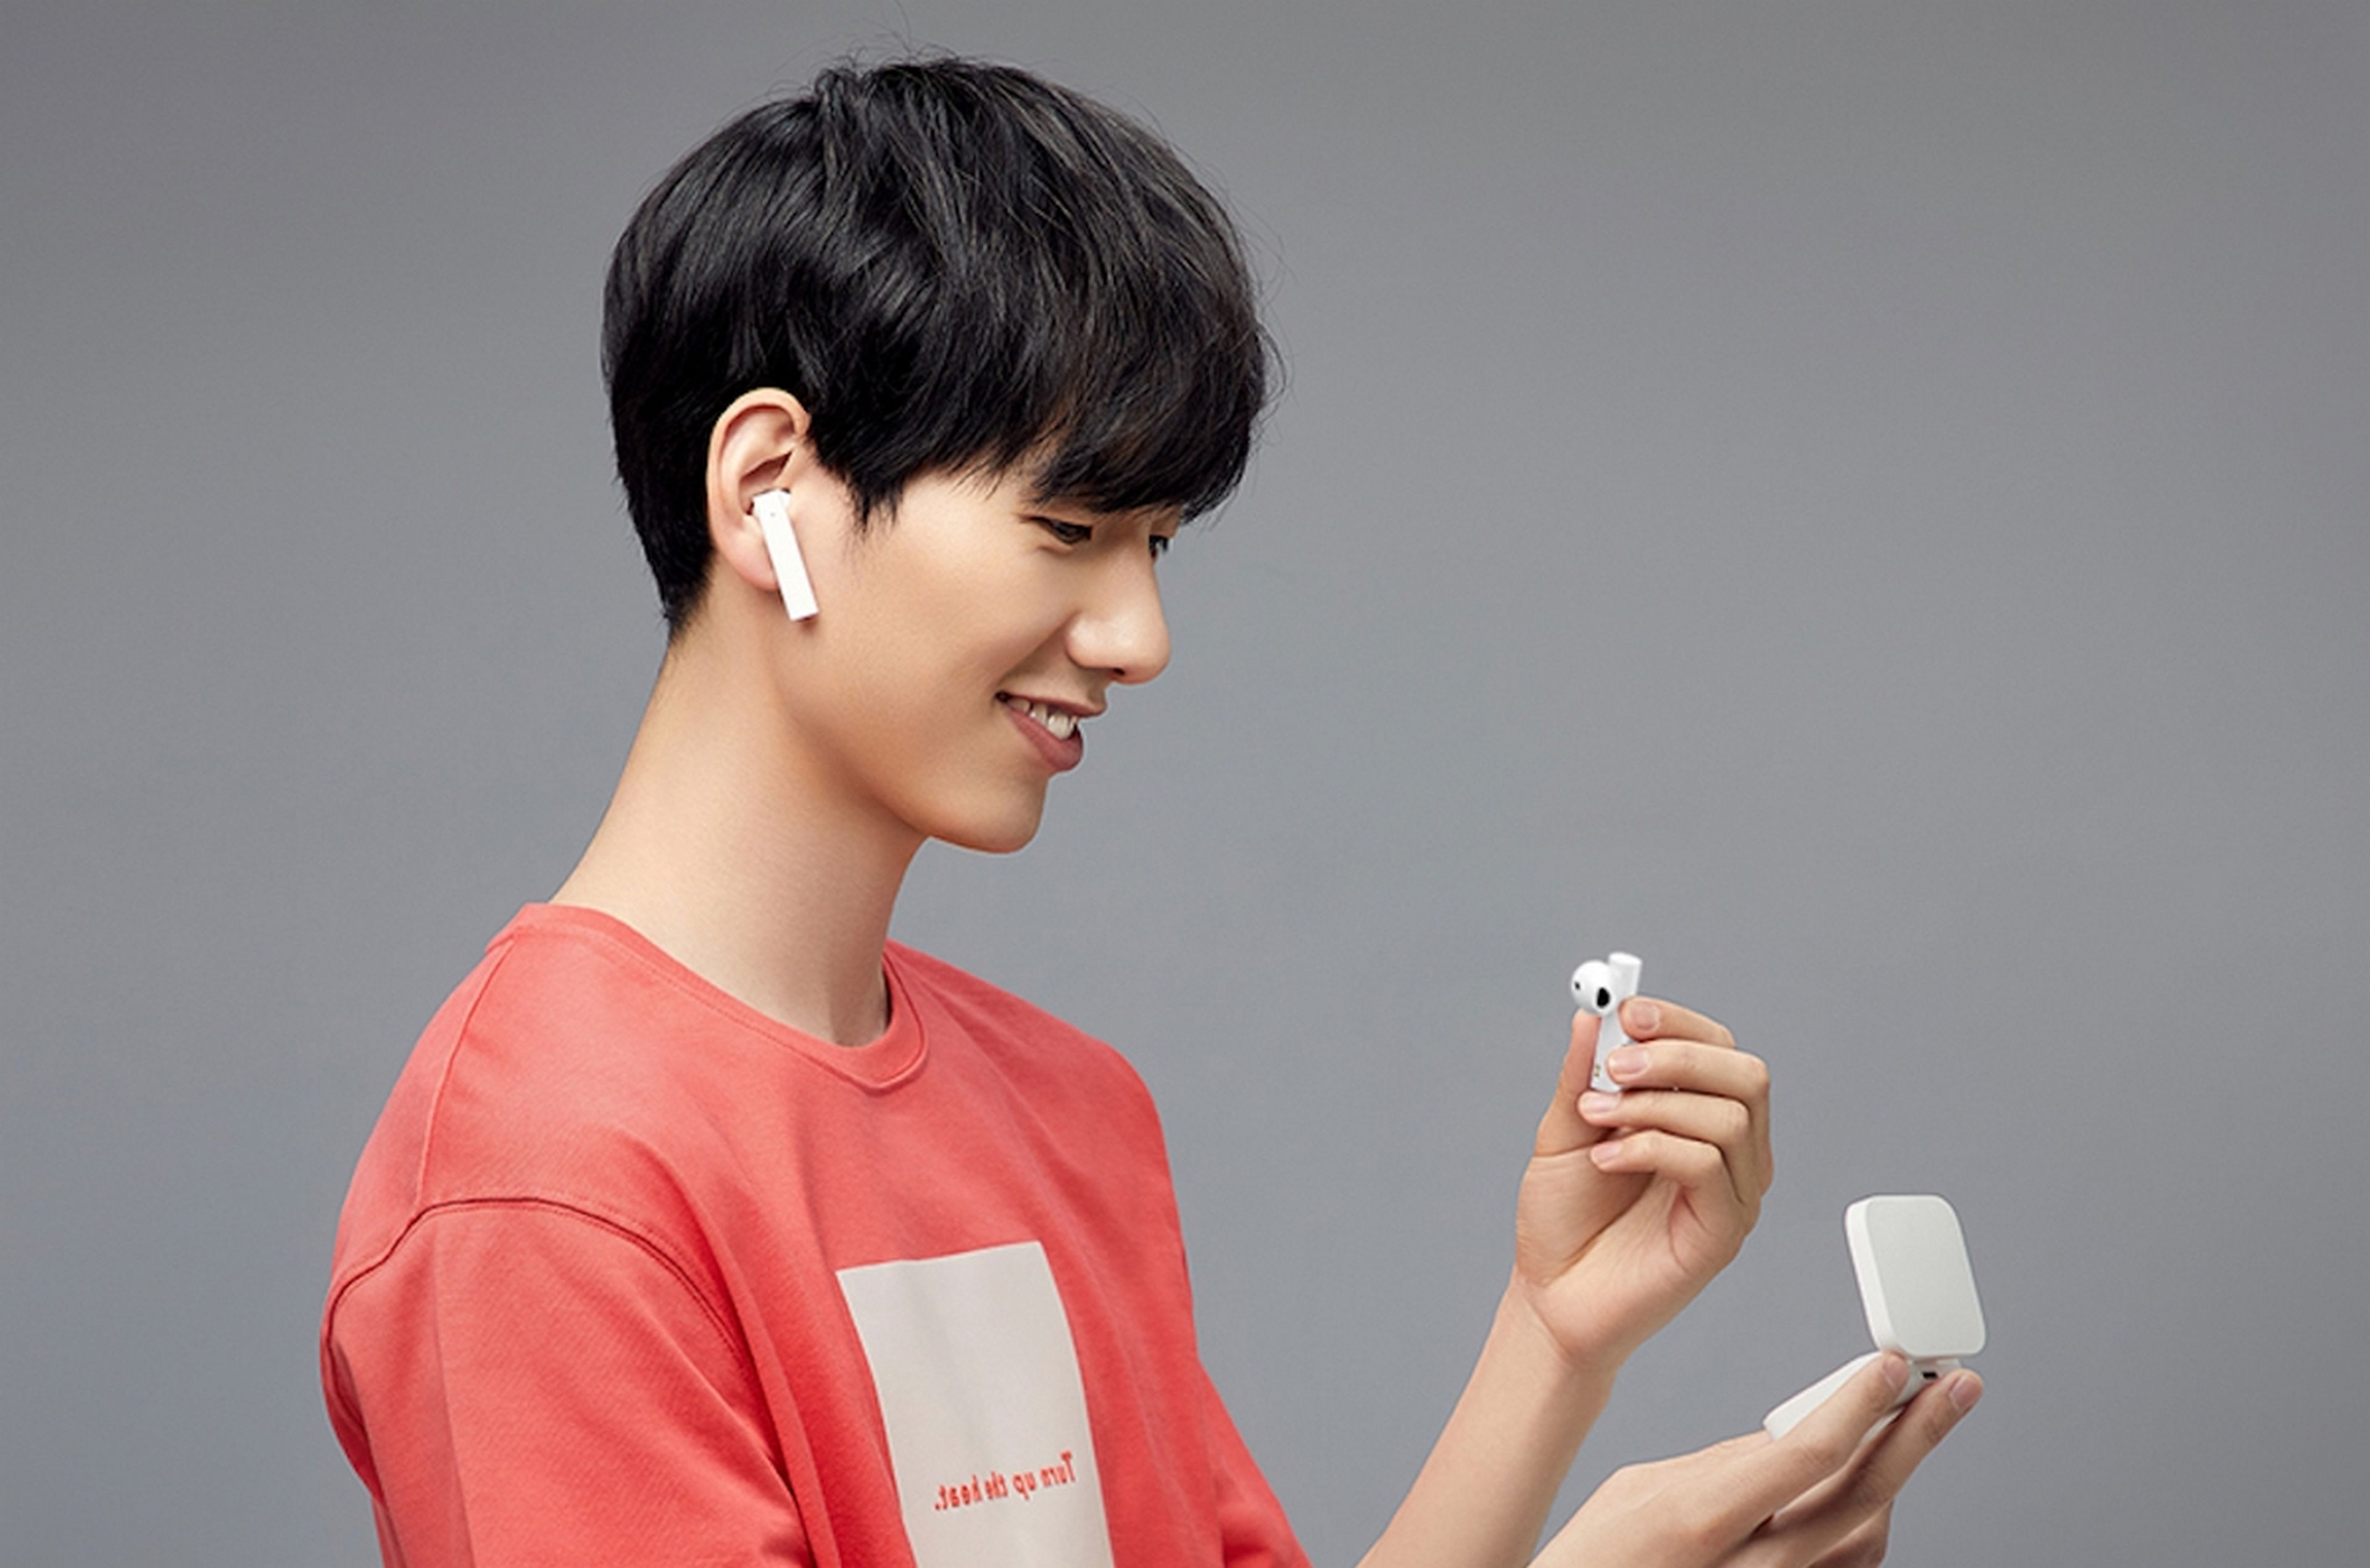 Experto Vamos Elocuente Mi True Wireless Earphones 2 Basic, así son los nuevos auriculares baratos  de Xiaomi con cancelación de ruido y 20 horas de autonomía | Computer Hoy